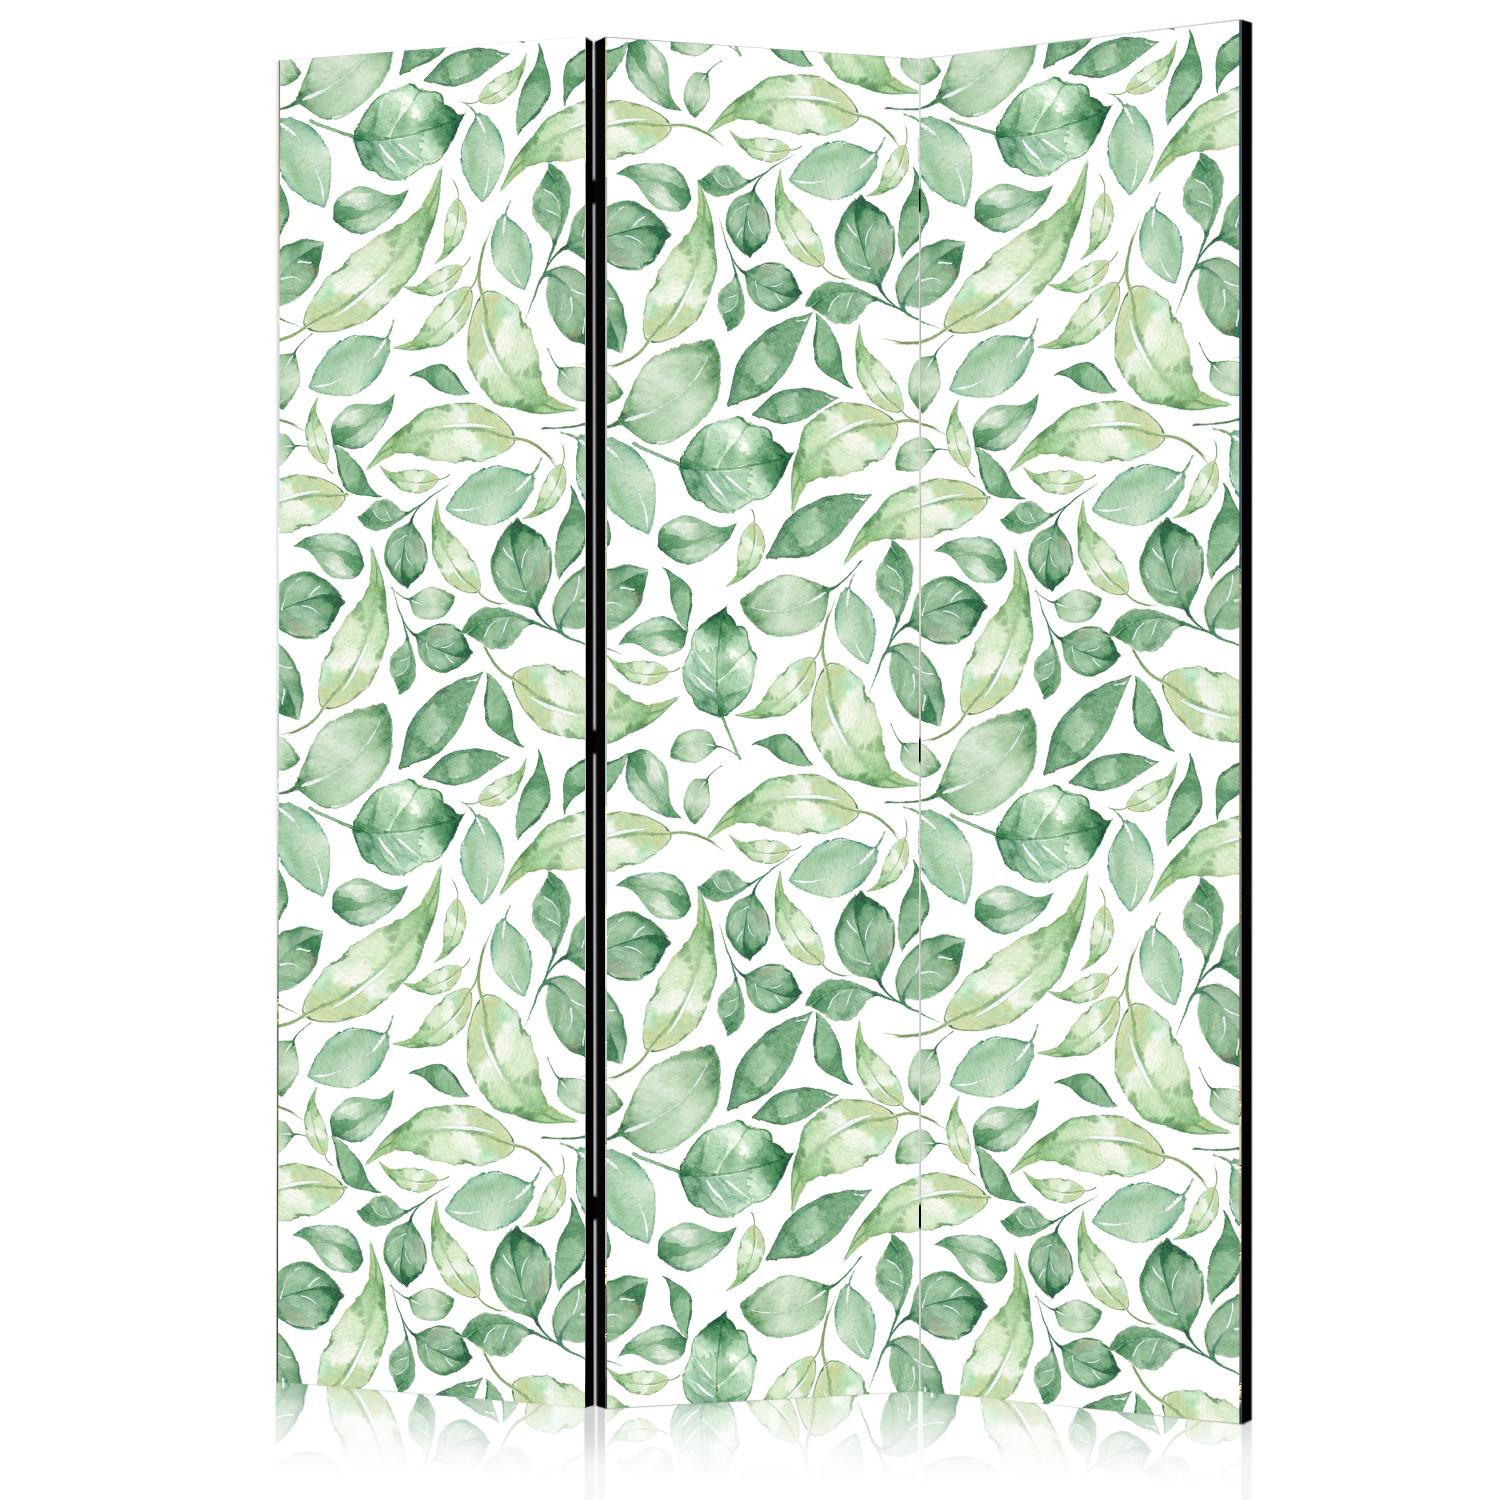 Biombo barato Belleza natural (3 partes): patrón de hojas verdes sobre fondo claro